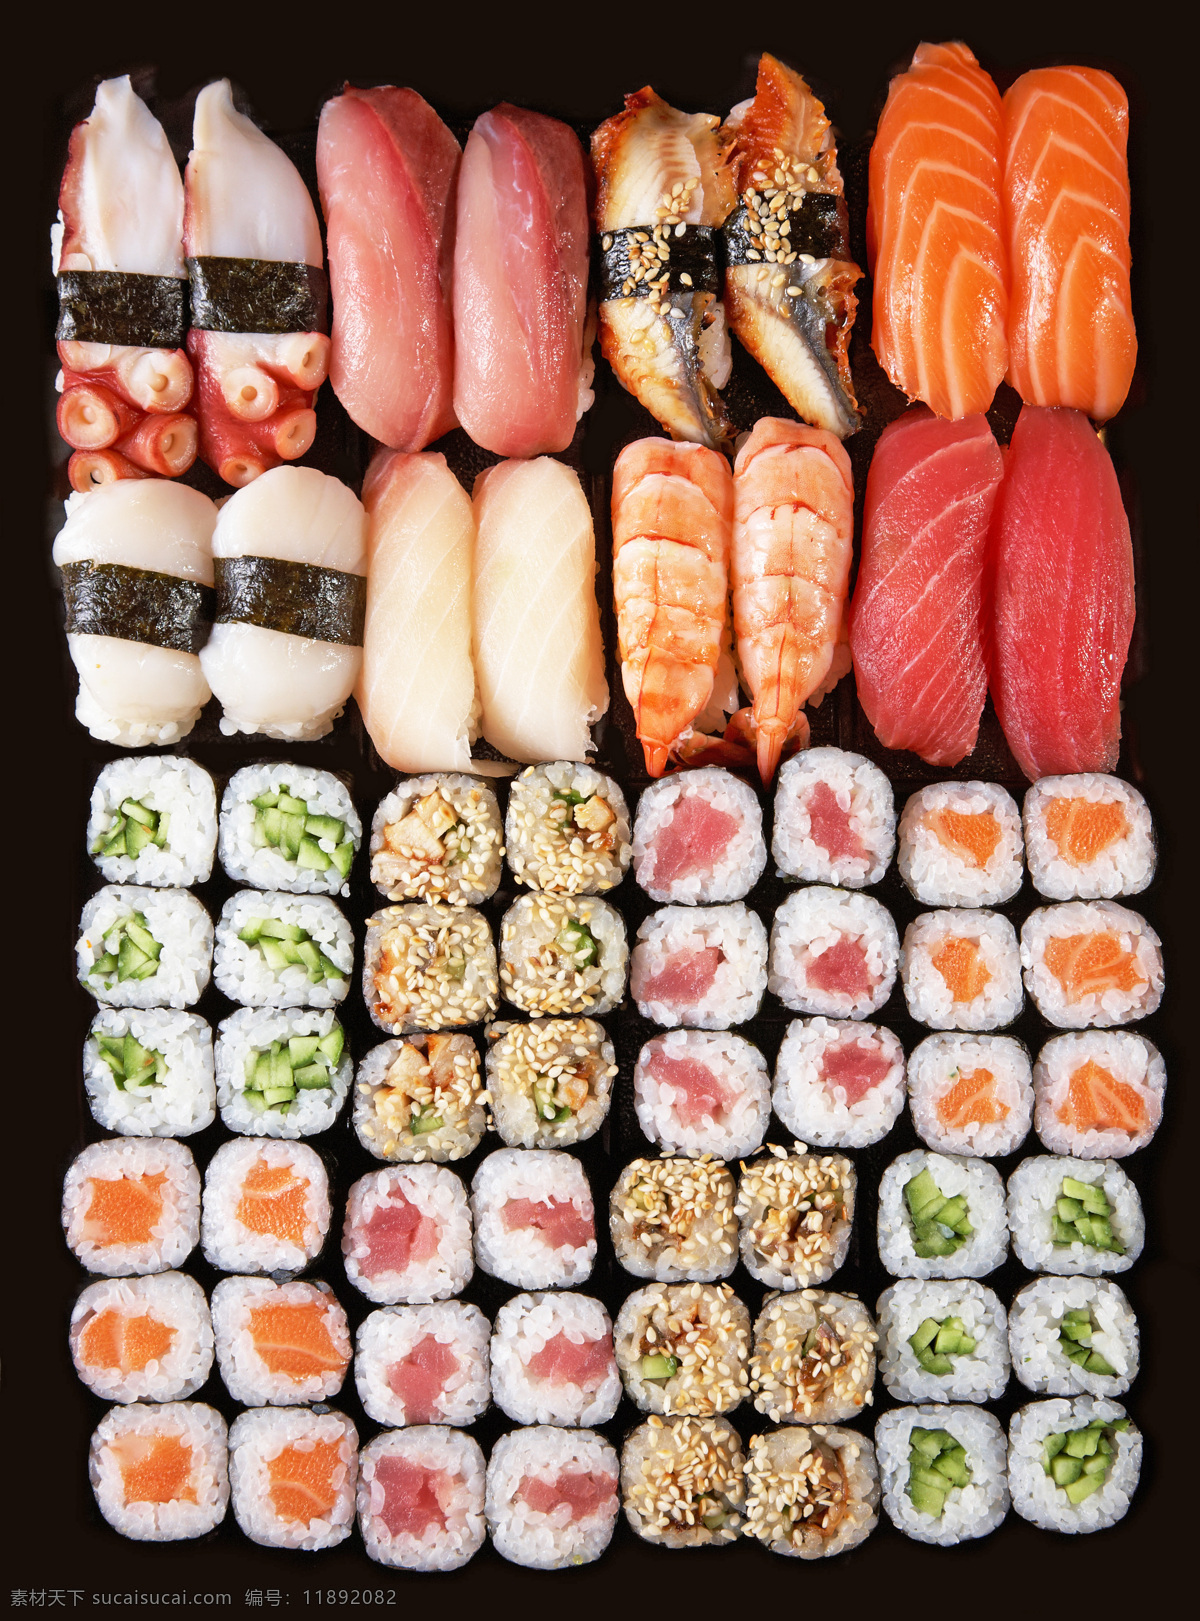 日本料理摄影 生鱼片 寿司 日本料理 国外美食 食物 美味 西餐美食 中华美食 餐饮美食 黑色